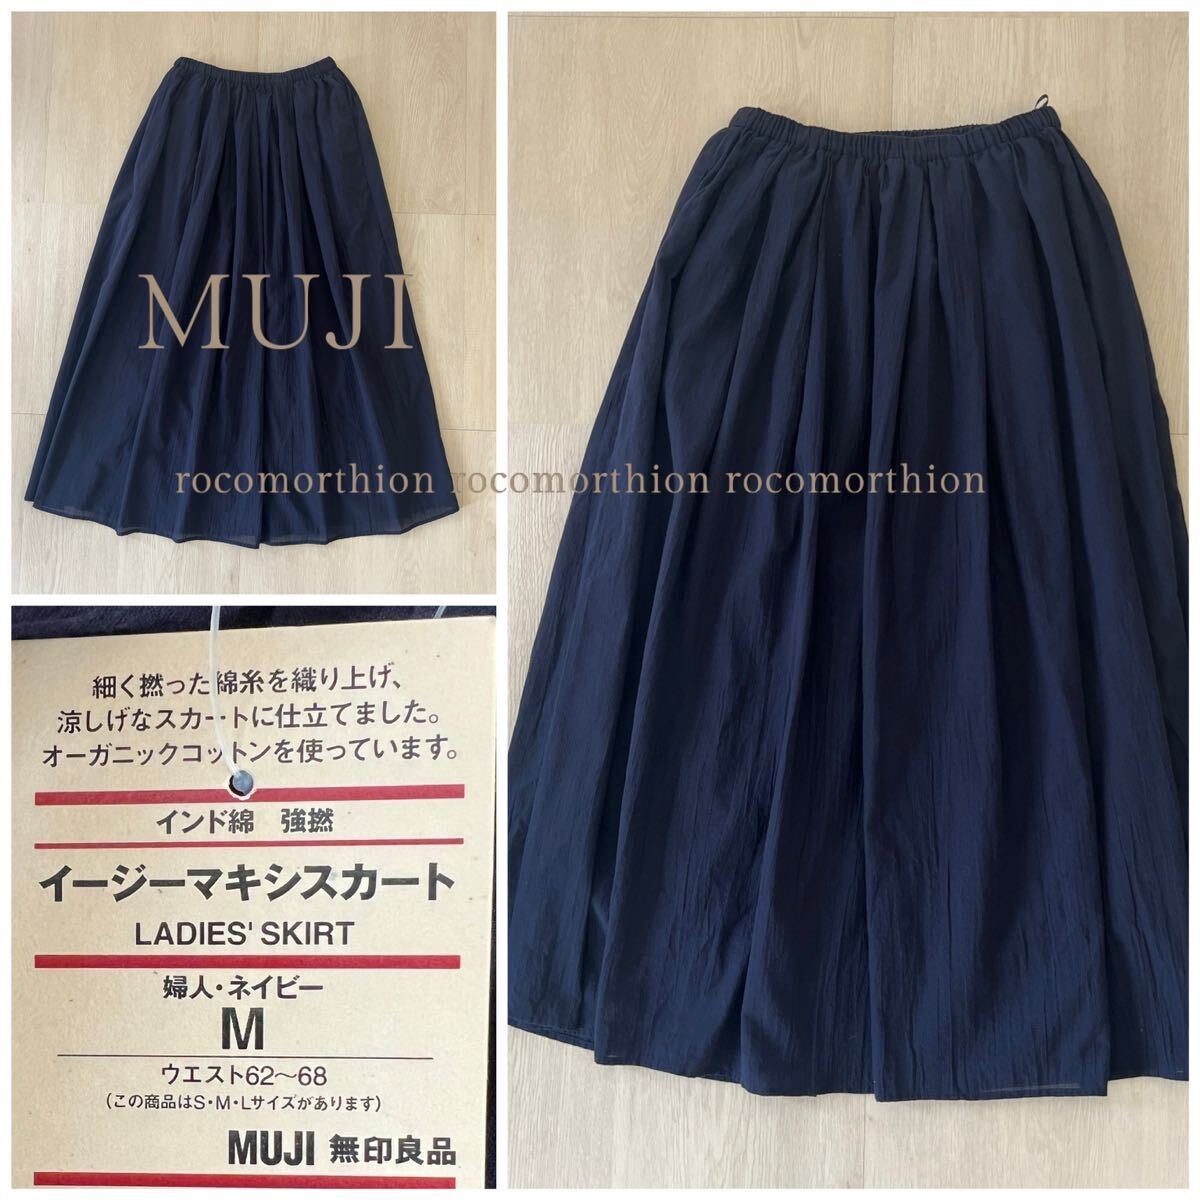  новый бирка MUJI Muji Ryohin Индия хлопок чуть более ..... легкий макси длина юбка длинная юбка талия резина pechi пальто имеется натуральный 